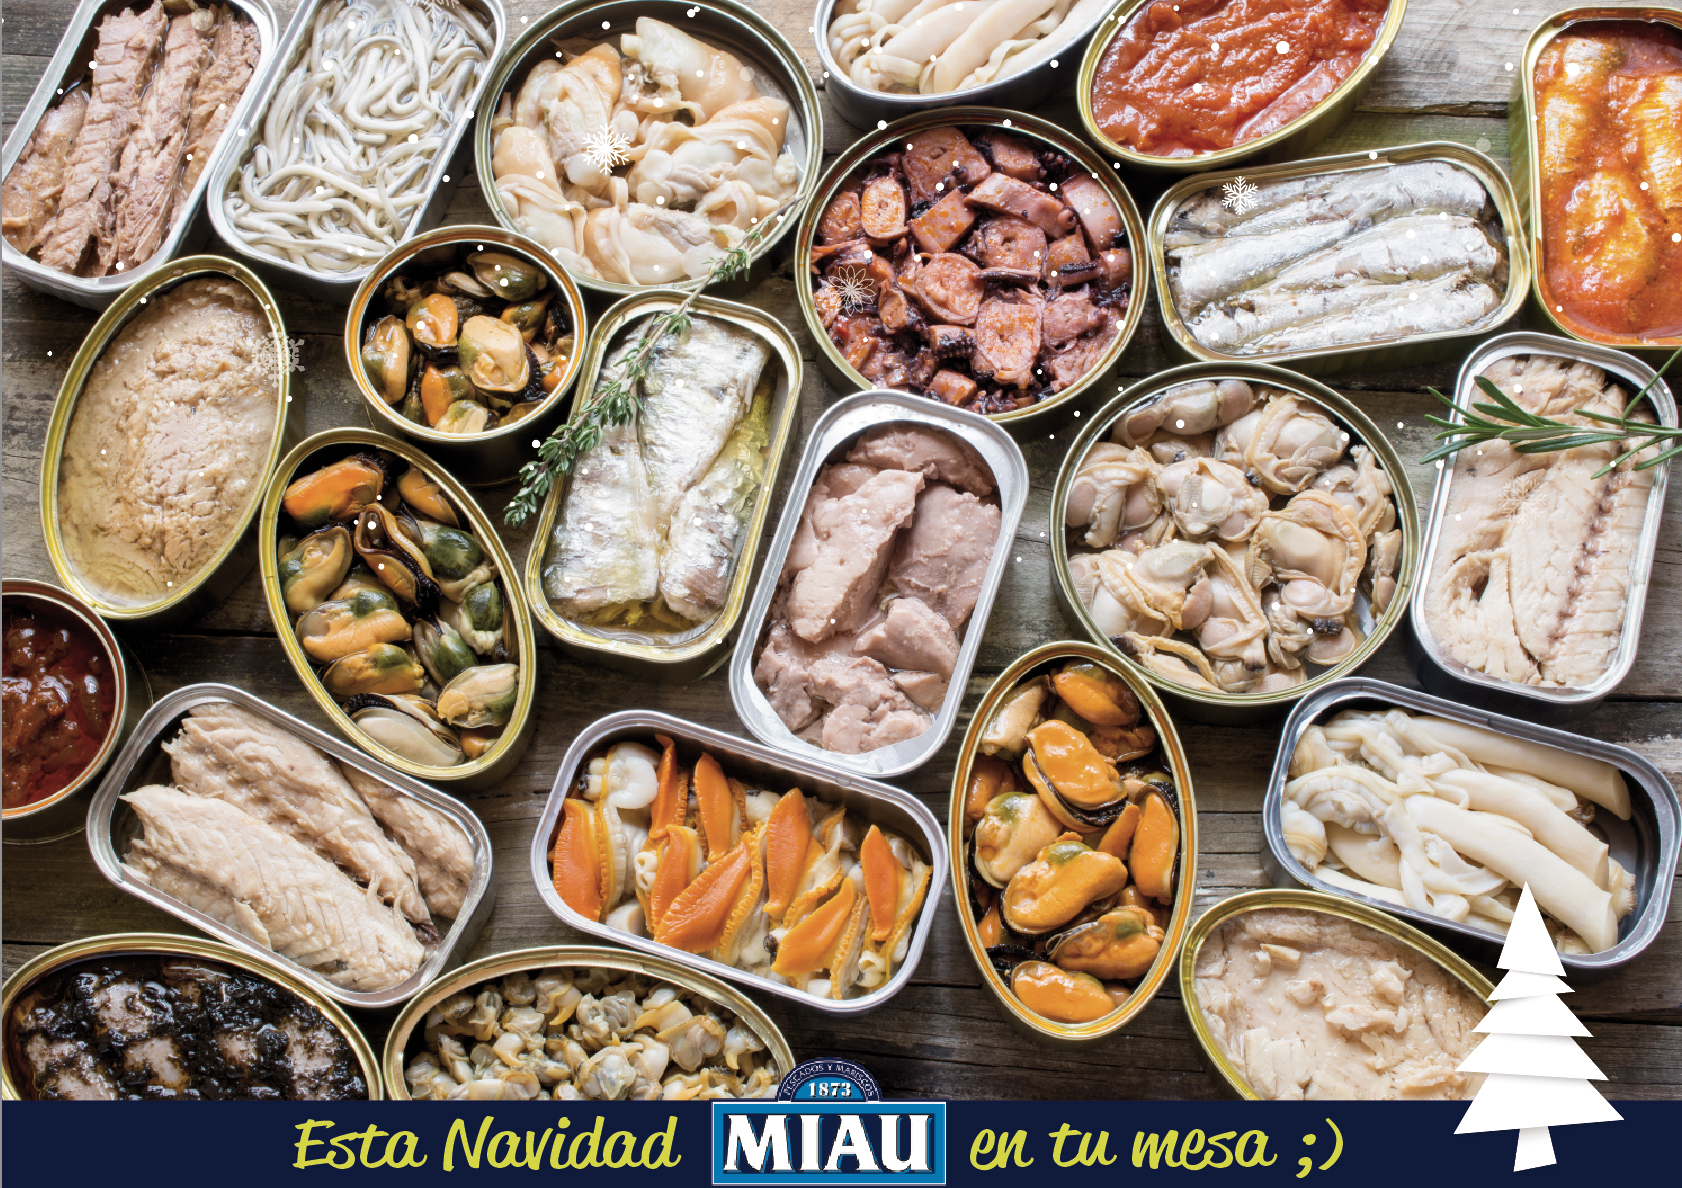 Conservas MIAU: tradición y calidad de pescados y mariscos